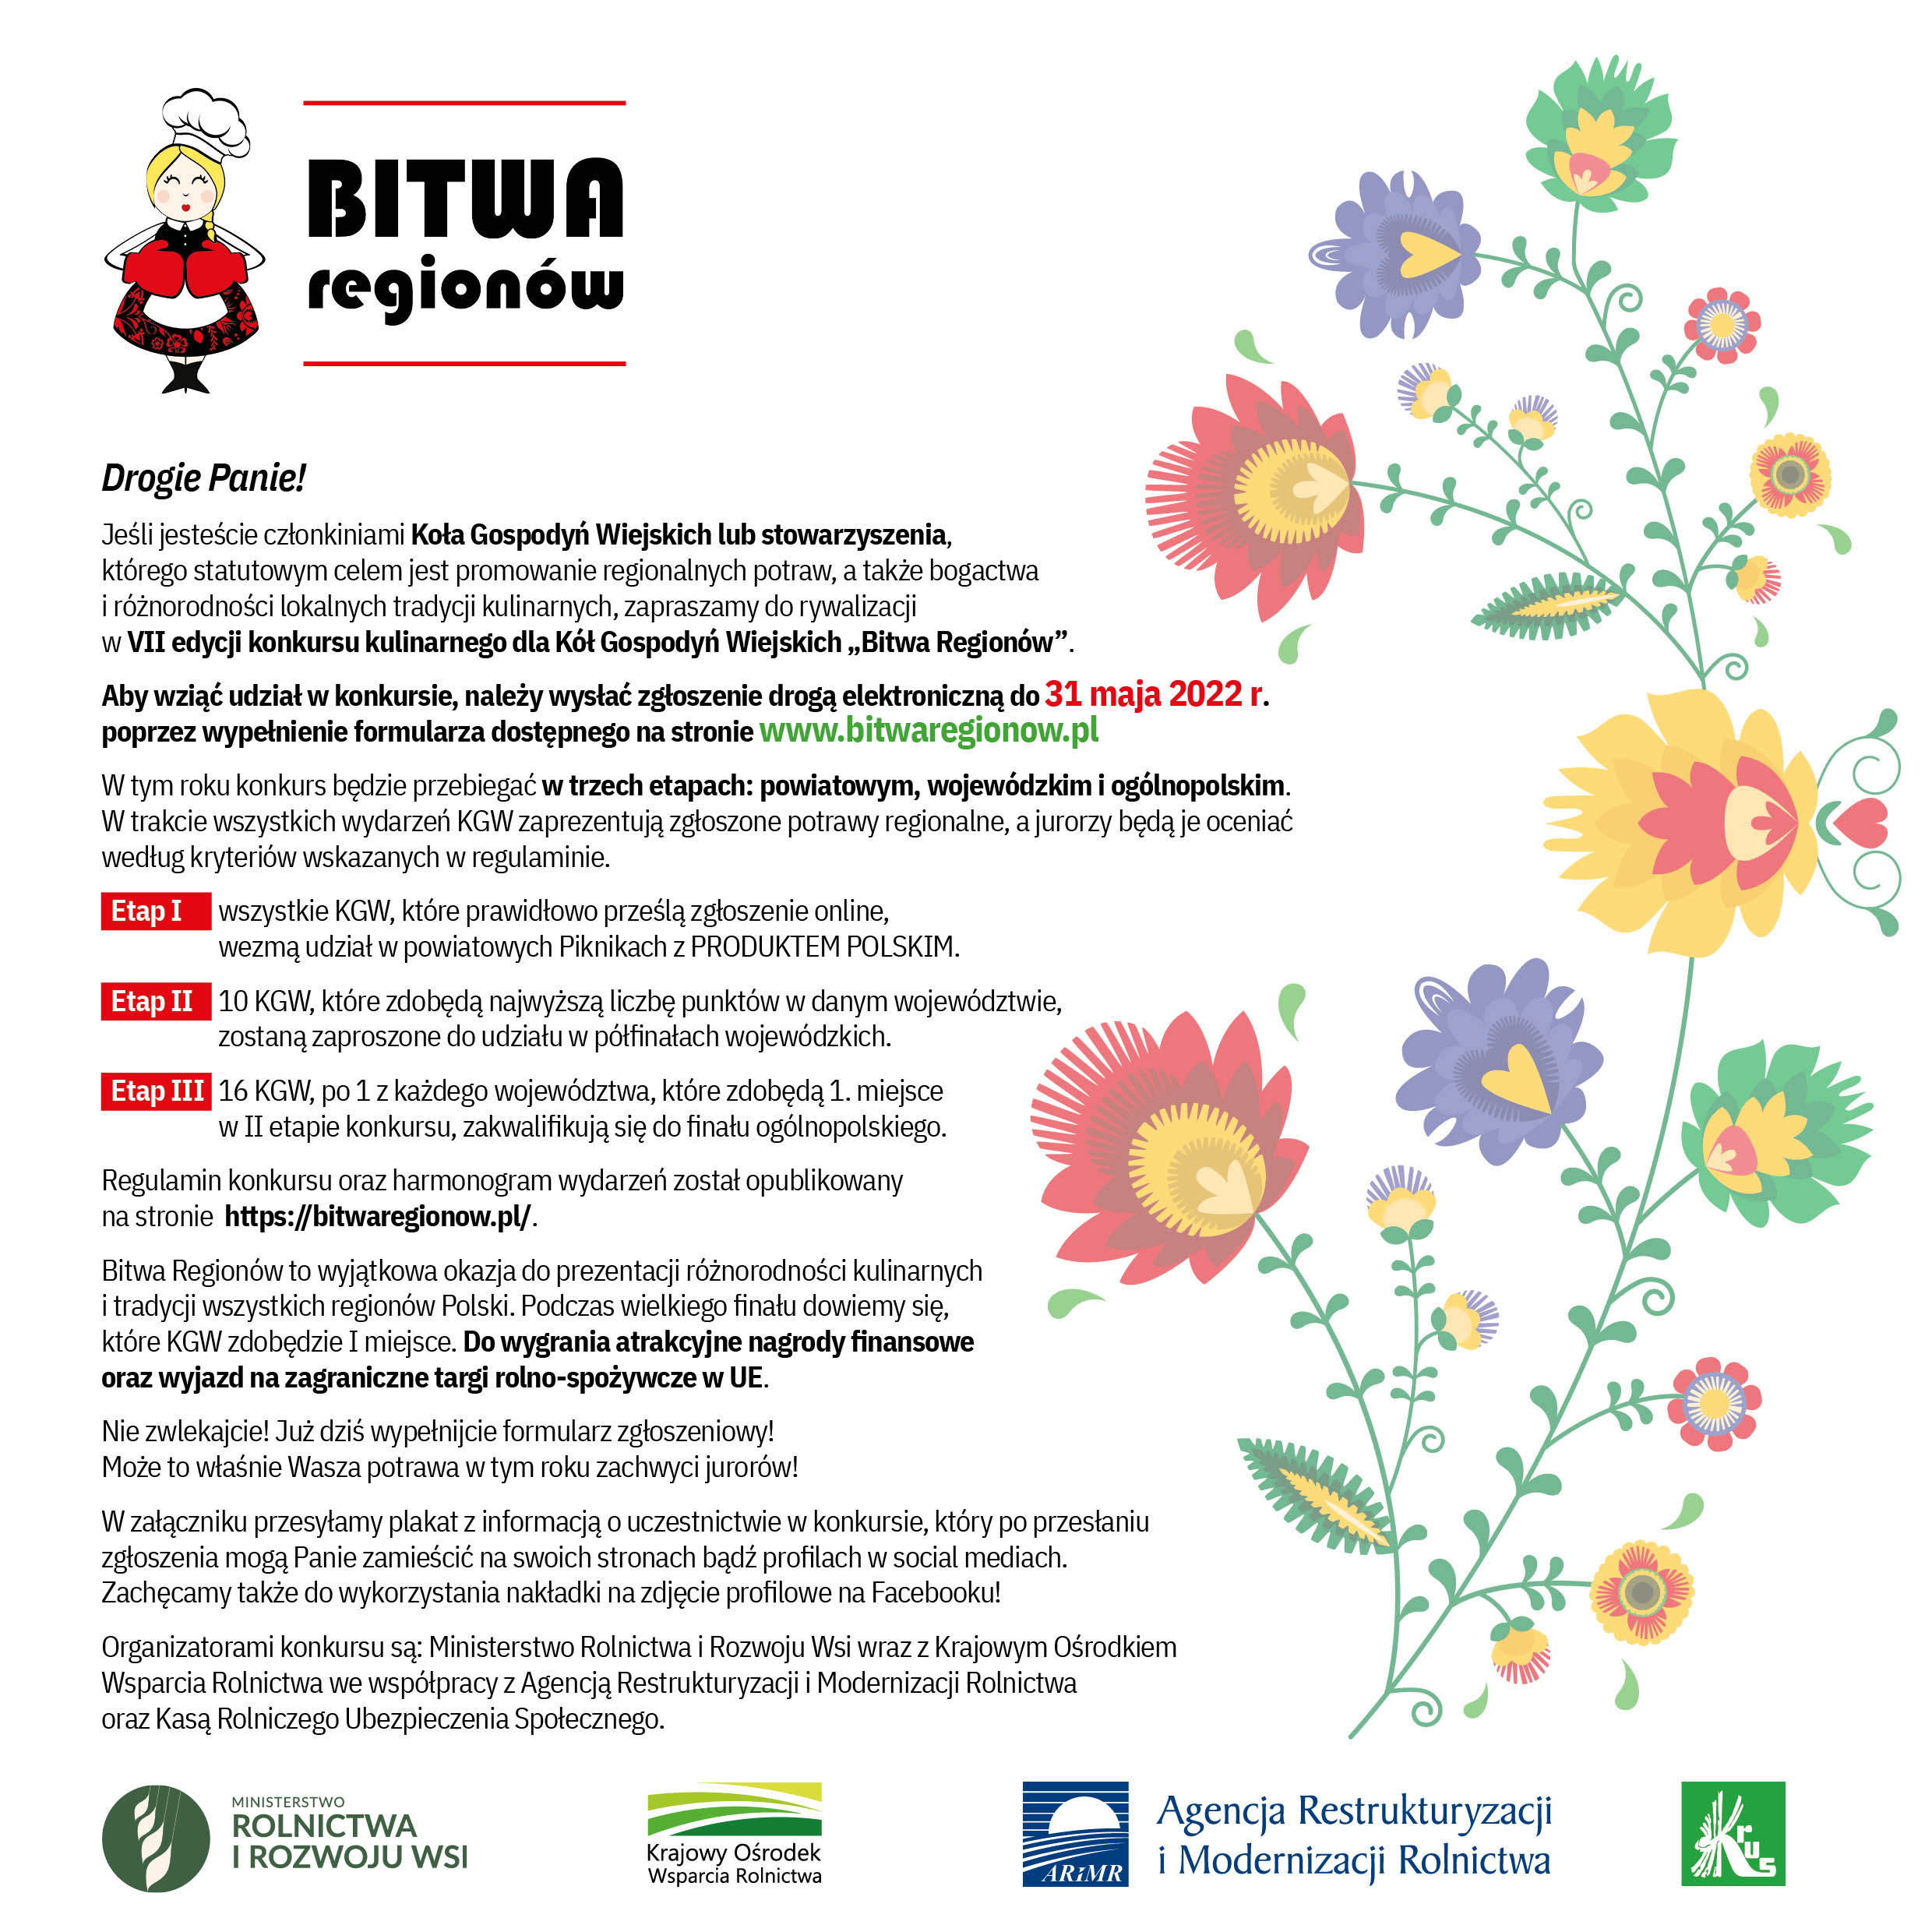 BITWA_REGIONOW_2022_zaproszenie.jpg